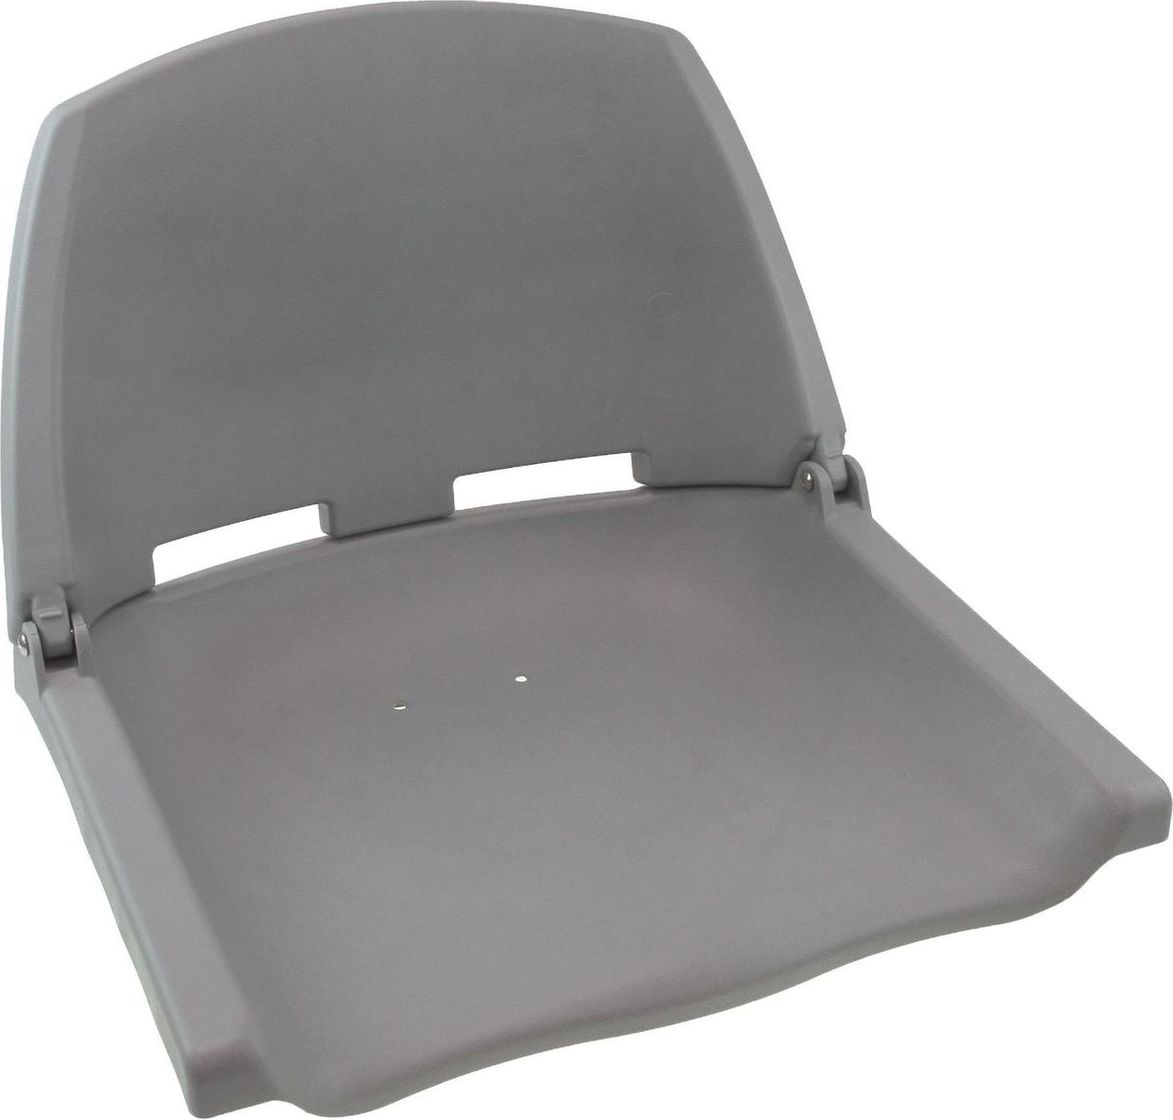 Кресло пластиковое серое (упаковка из 3 шт.) C12503G_pkg_3 кранец easterner надувной 400х114 белый упаковка из 30 шт c11754 pkg 30